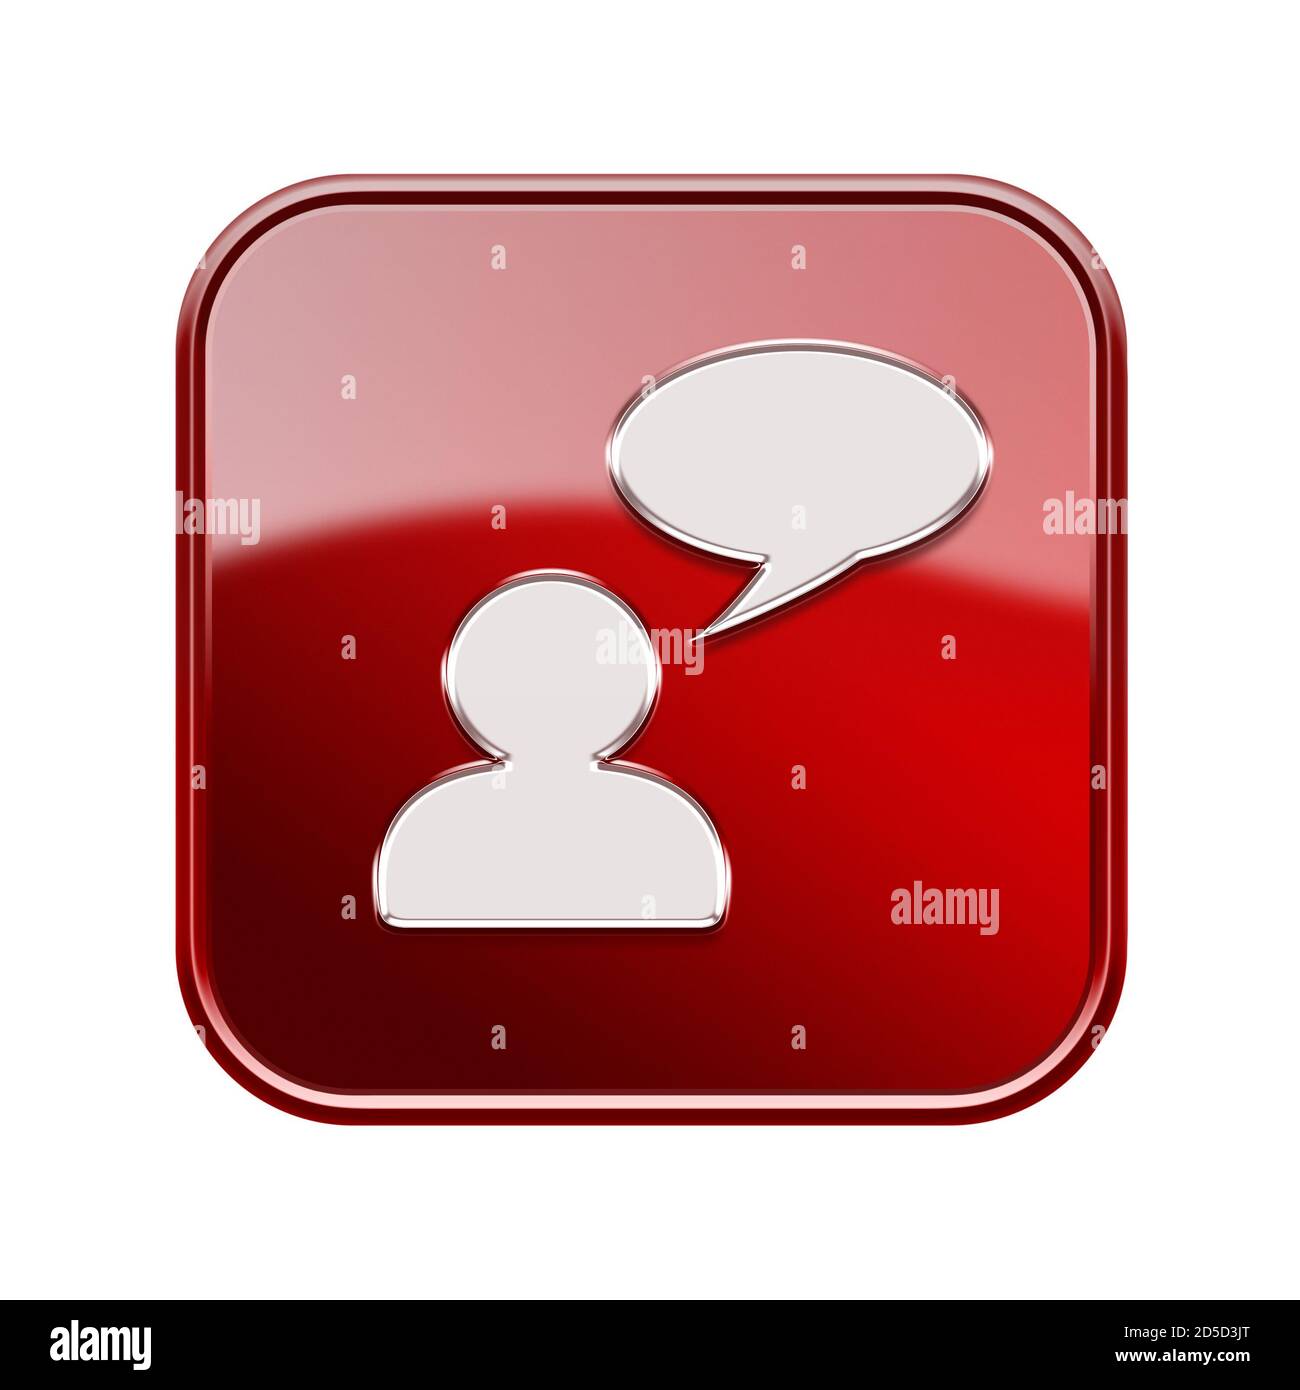 Icona Chat rosso lucido, isolato su sfondo bianco Foto Stock